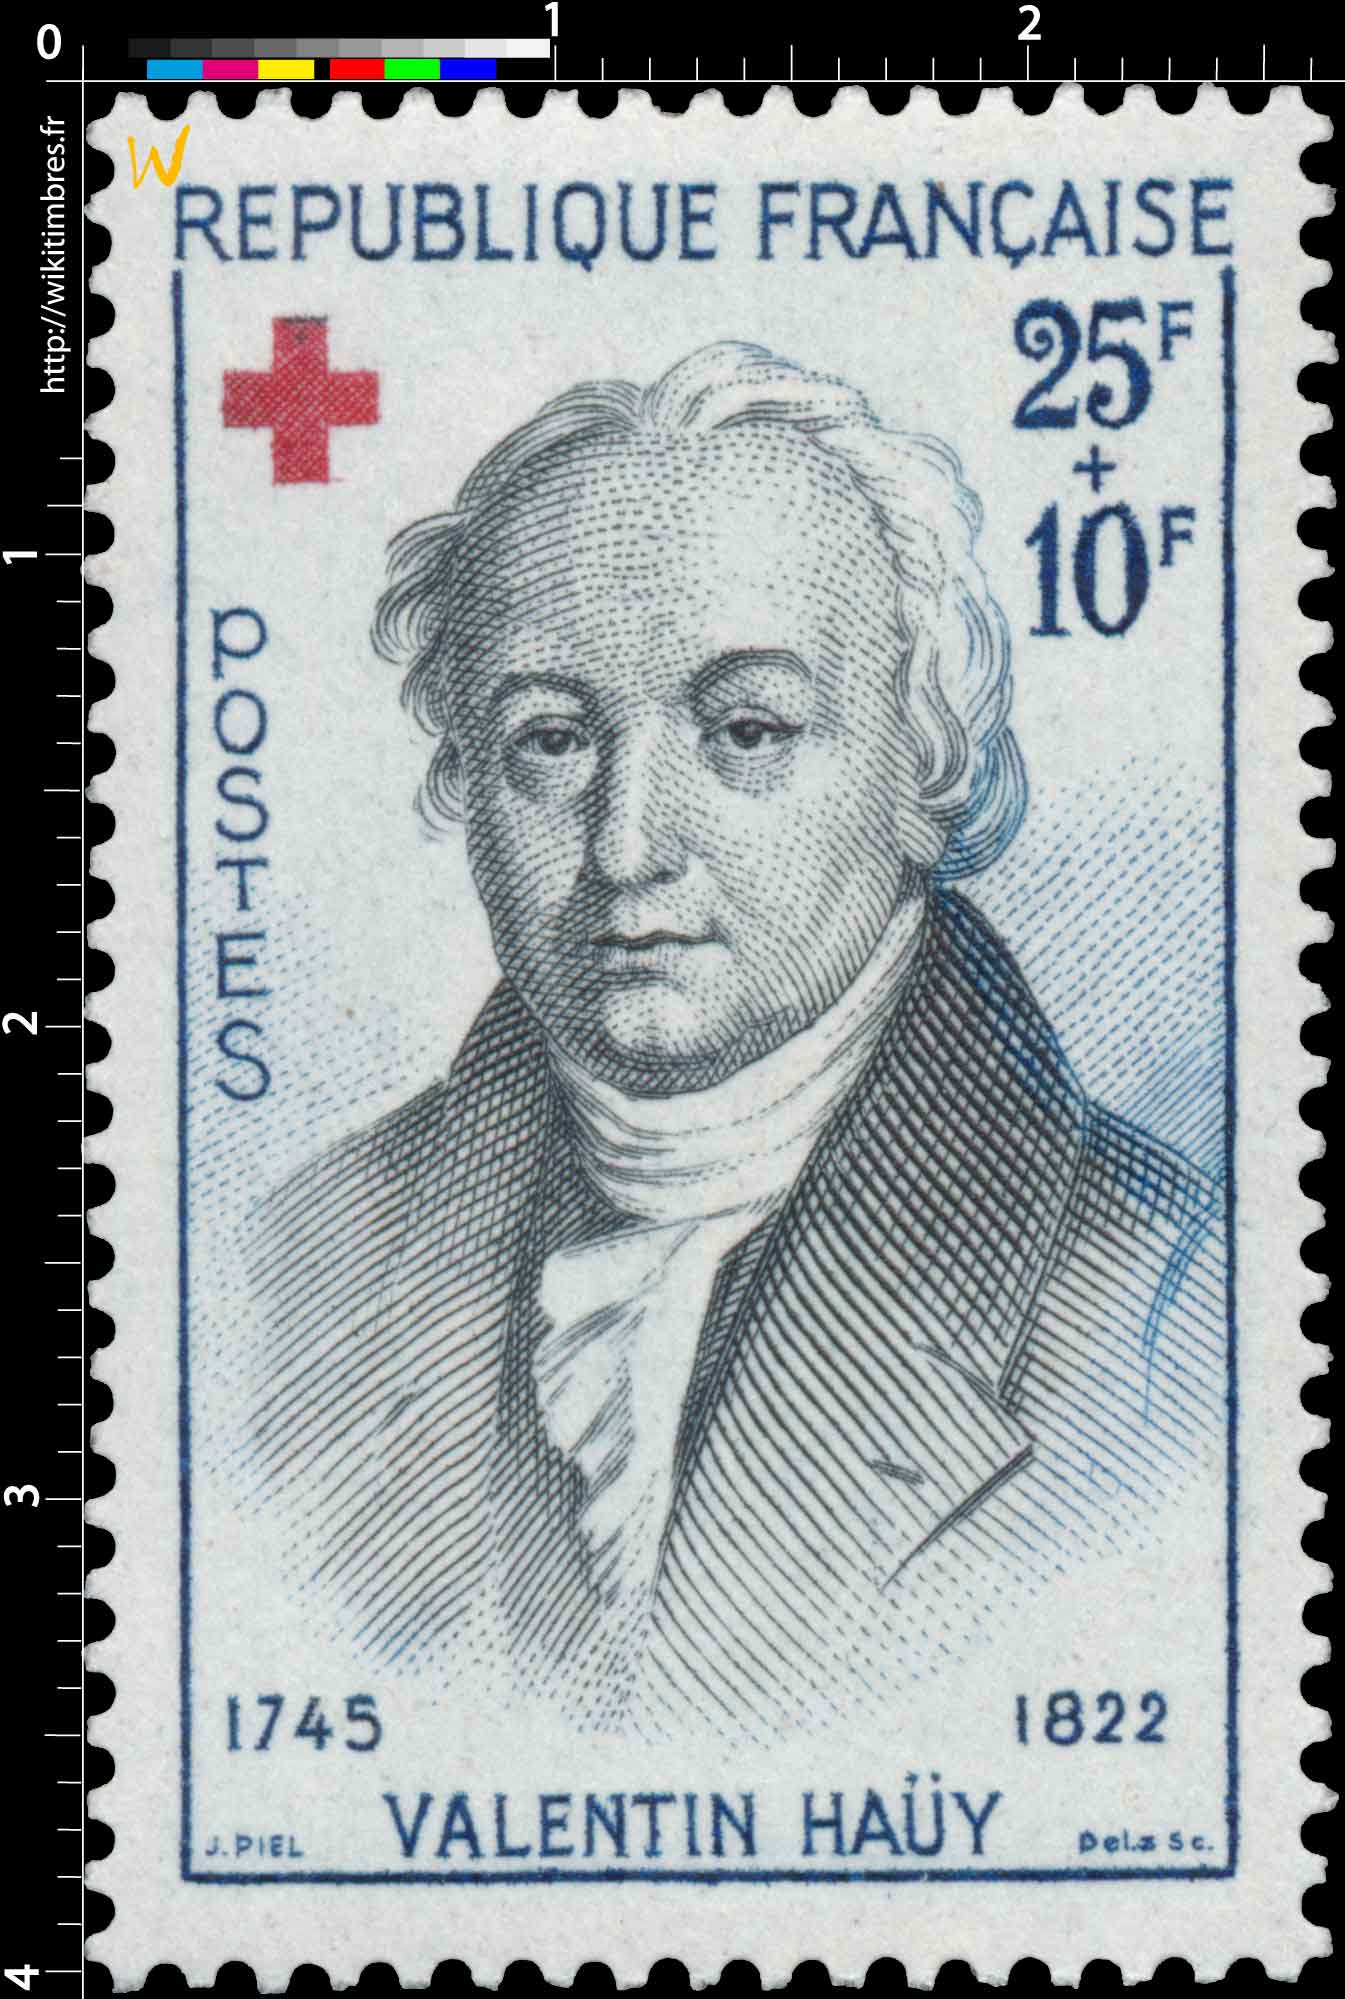 VALENTIN HAÜY 1745-1822